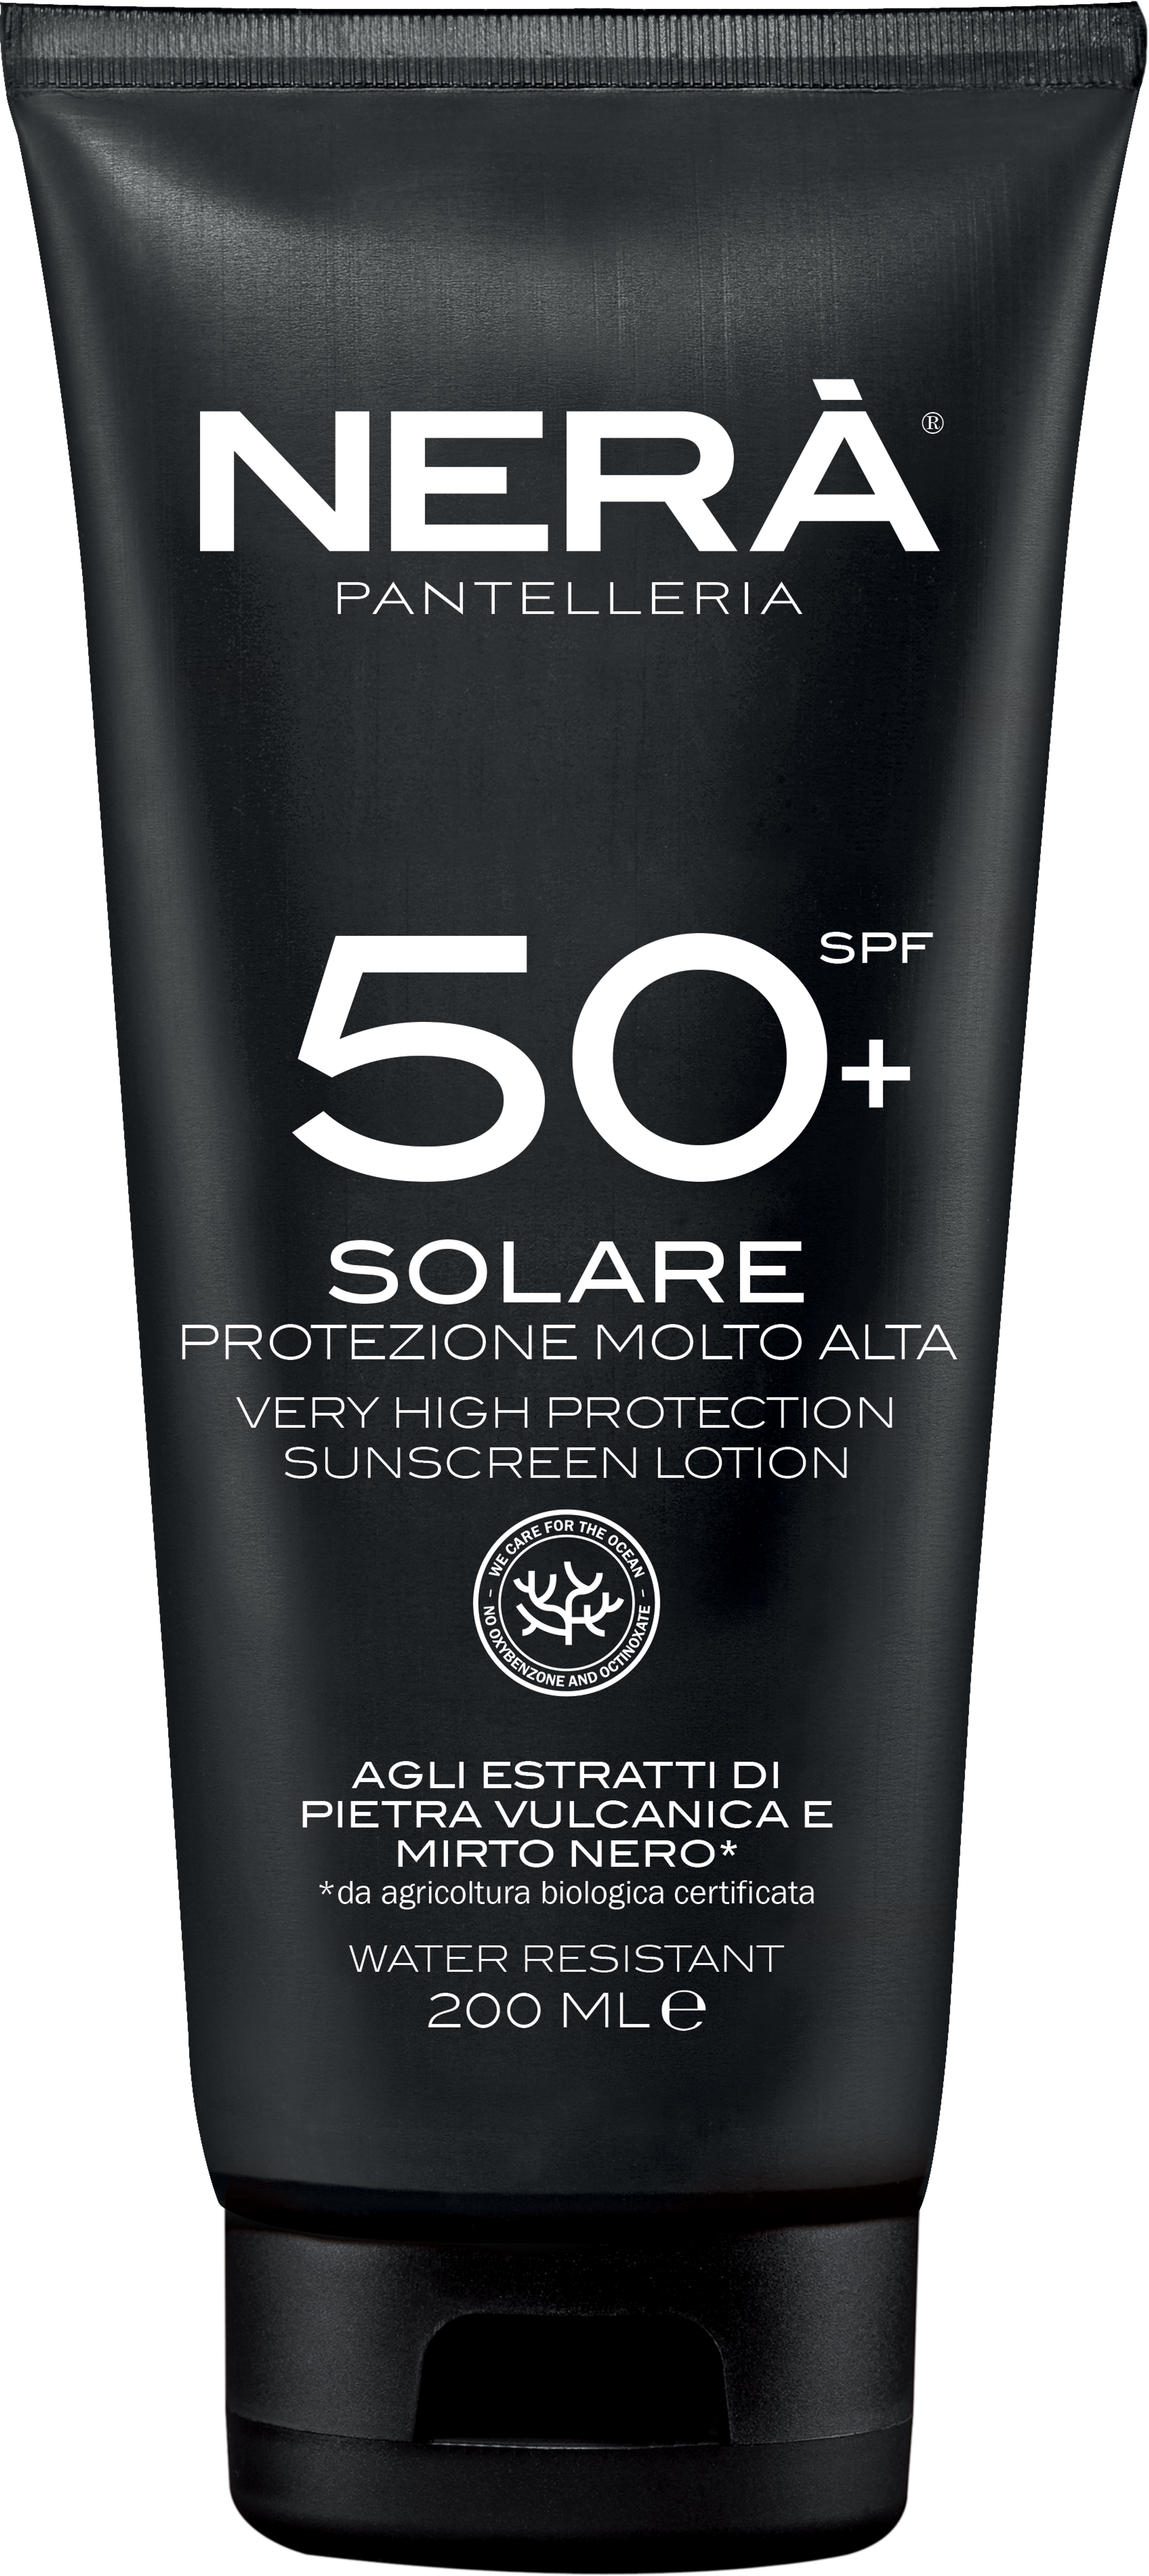 Nerà Pantelleria Spf 50+ Crema Solare Protezione Molto Alta 1